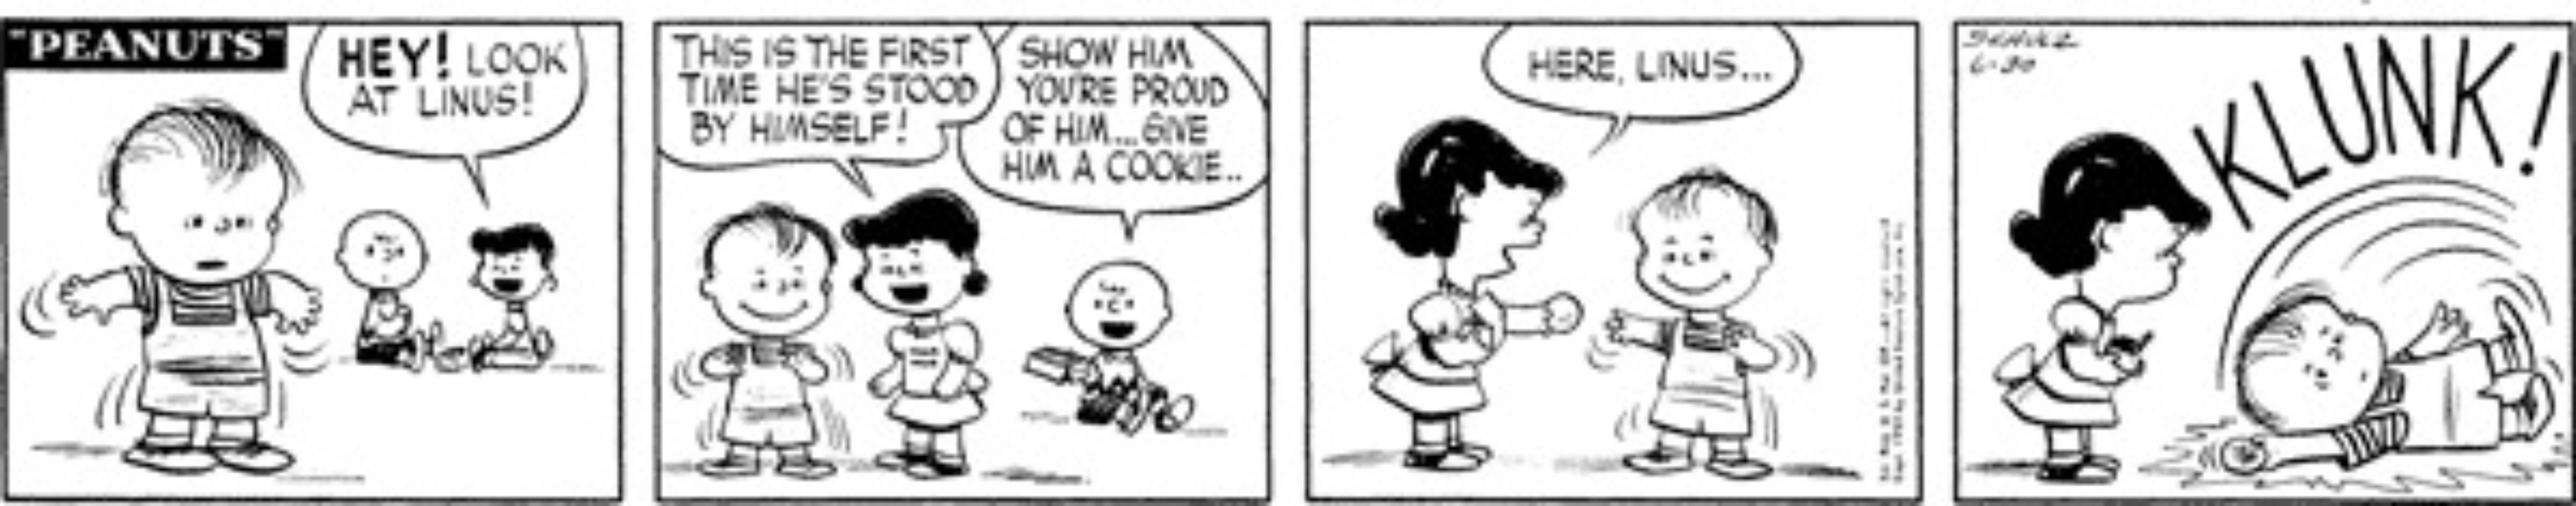 Linus es todavía un niño pequeño.